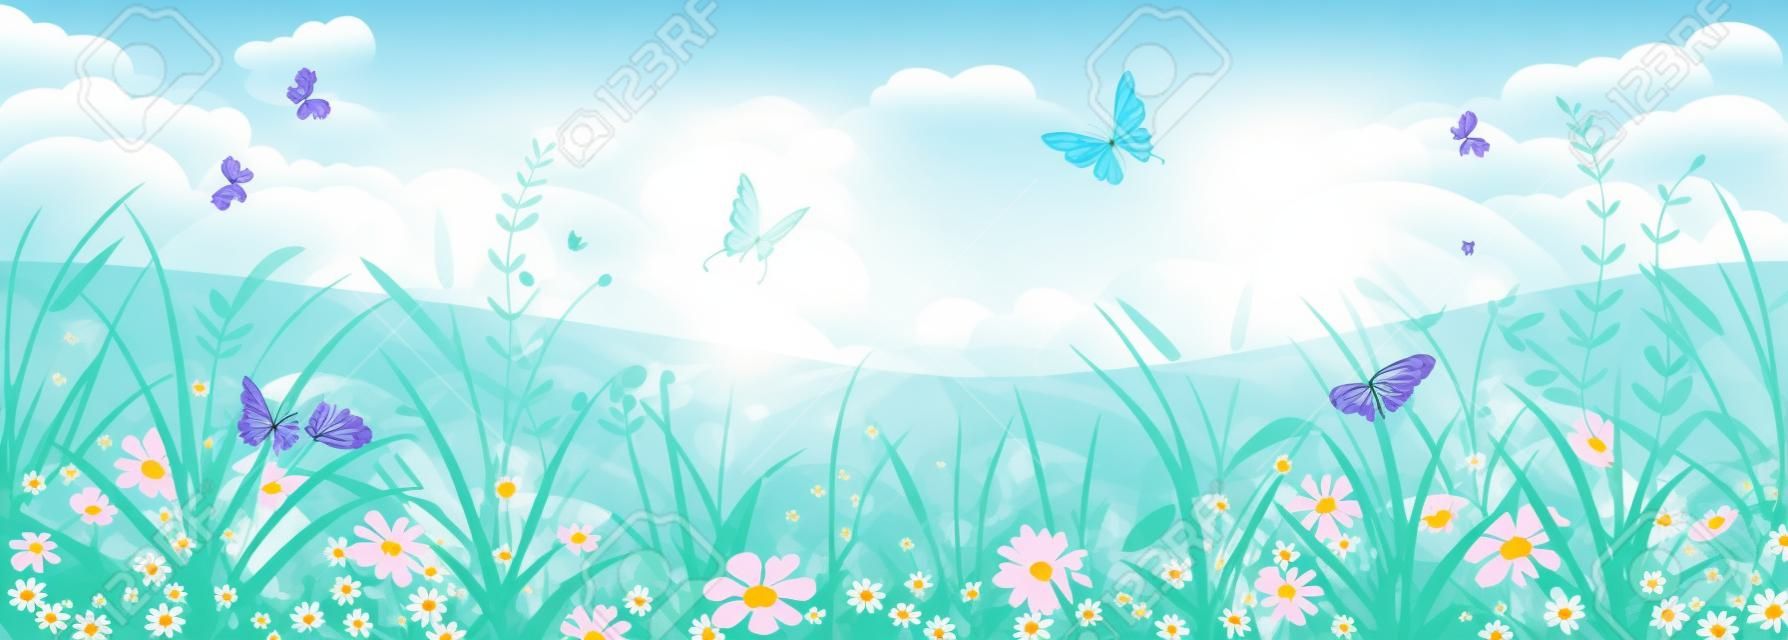 Paisagem floral do verão ou da primavera, prado com flores, céu azul e borboletas